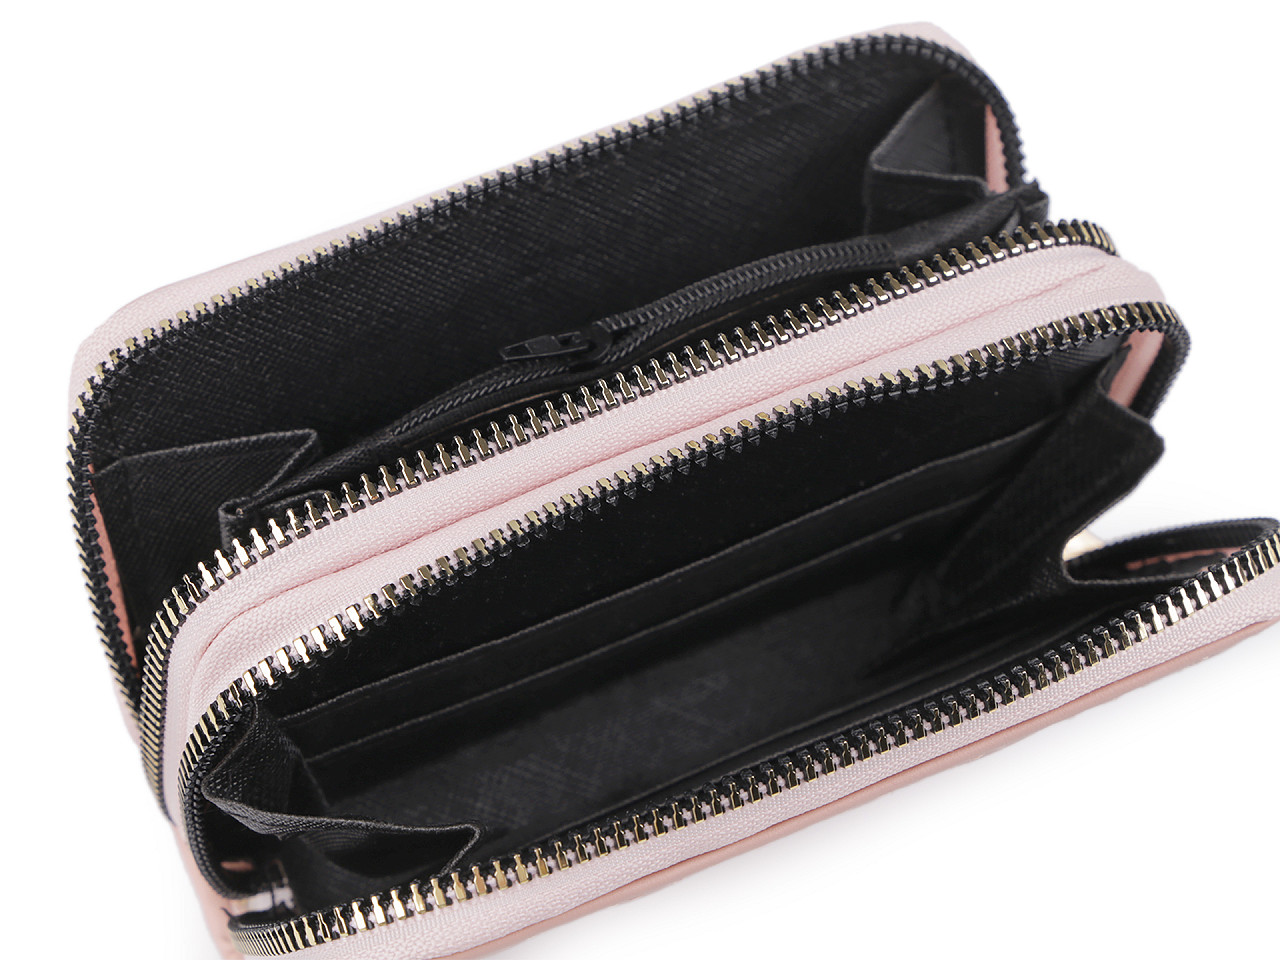 Damen-/Mädchen-Brieftasche doppelt 8x13 cm, grau, 1 Stk.